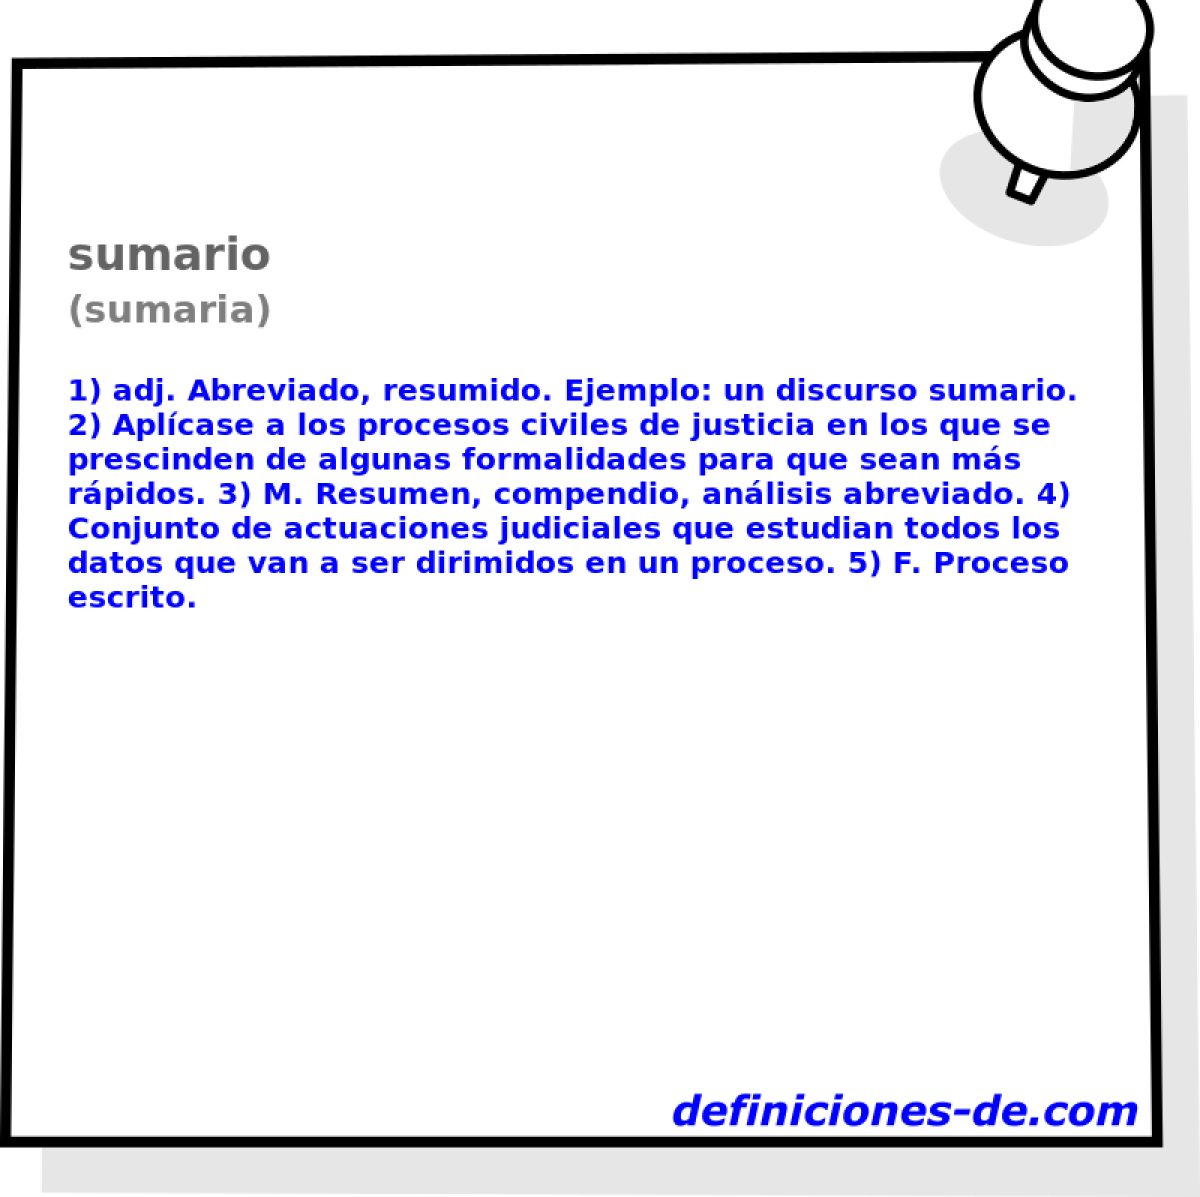 sumario (sumaria)